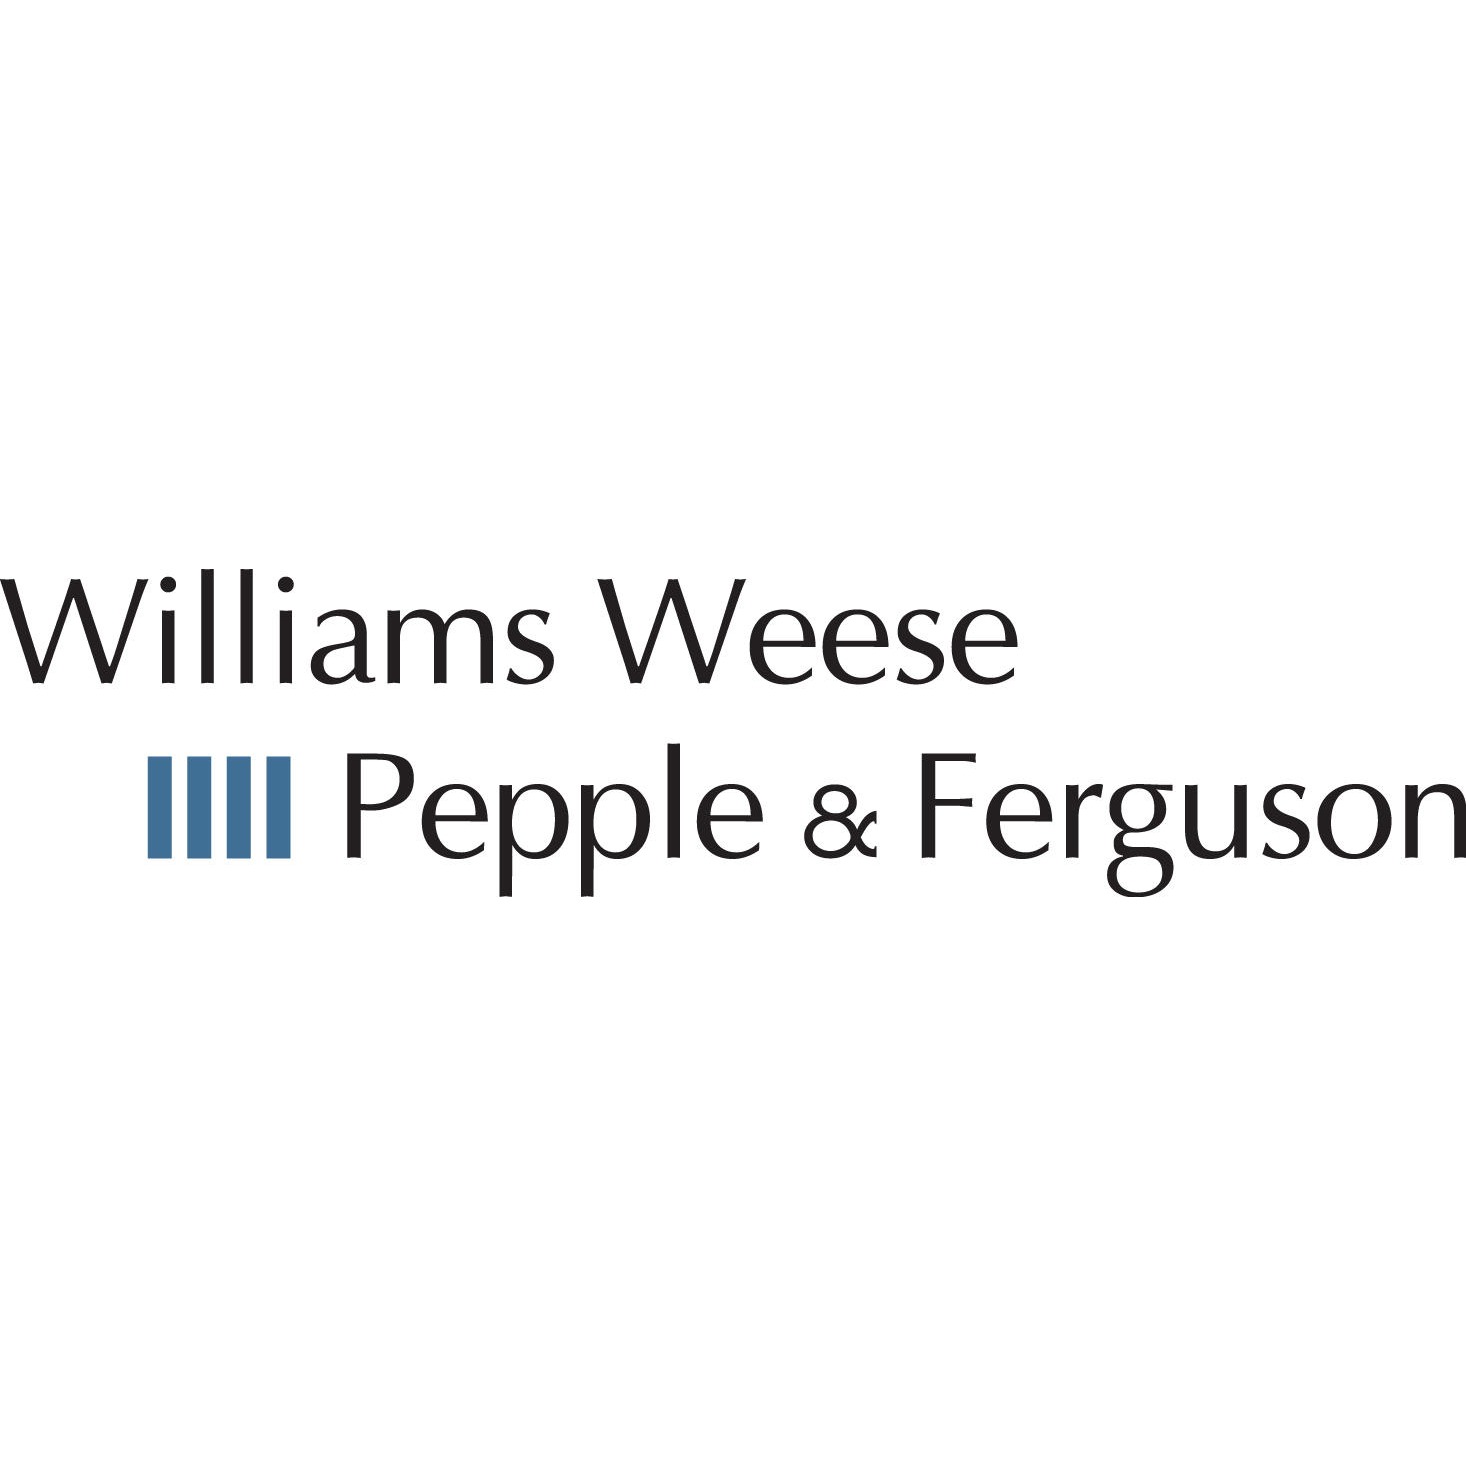 Williams Weese Pepple & Ferguson - Denver, CO 80202 - (303)861-2828 | ShowMeLocal.com